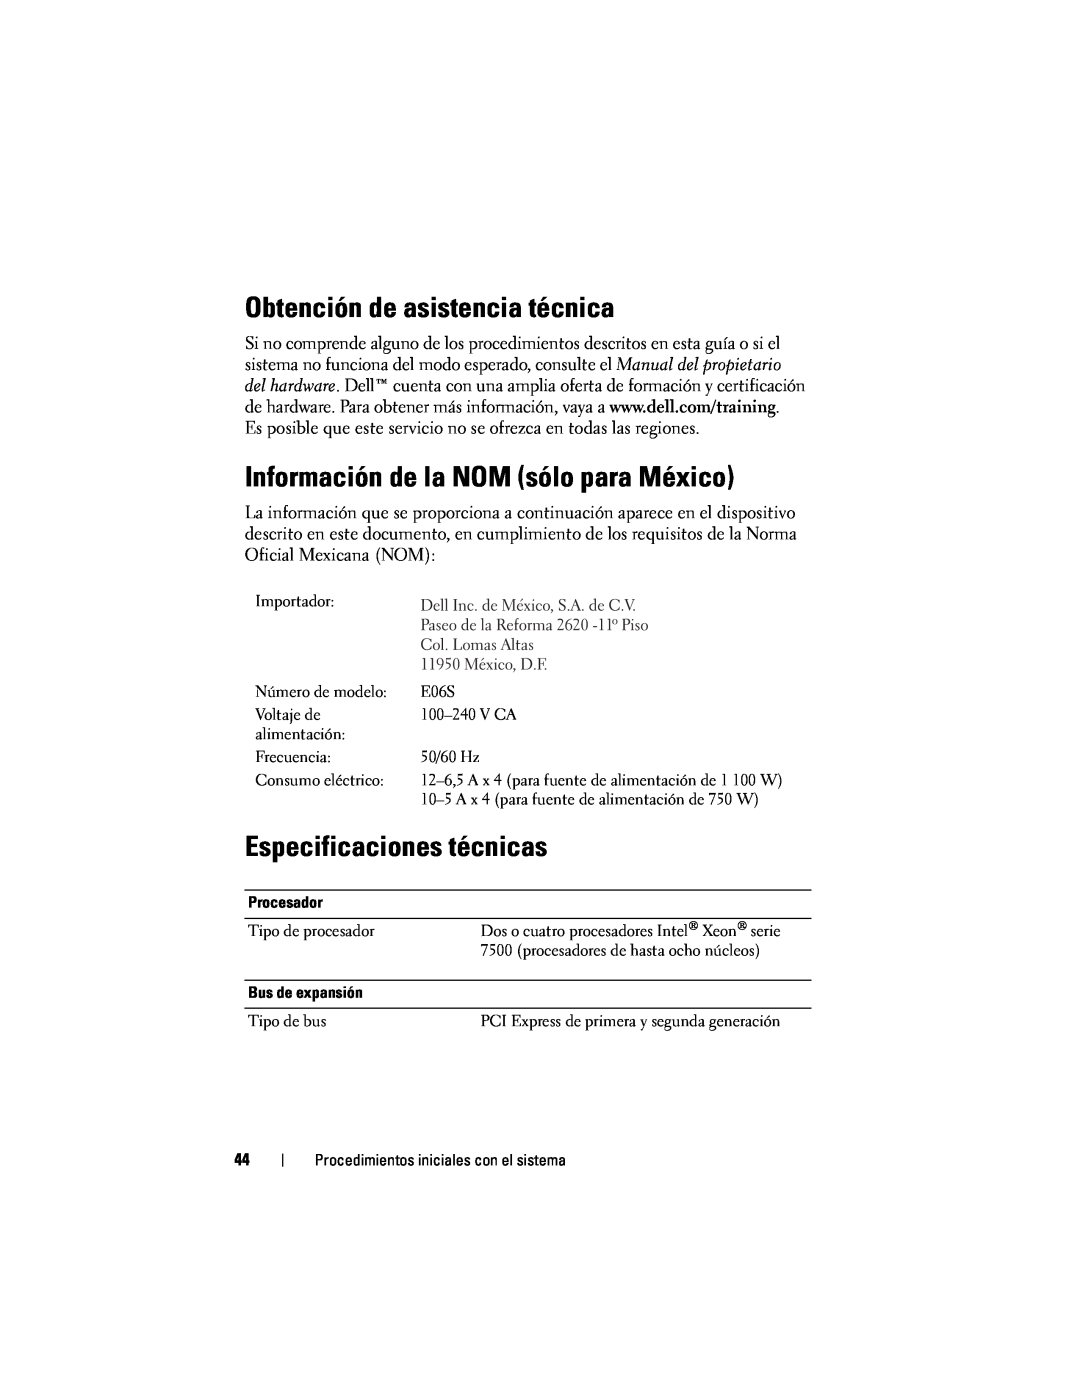 Dell R910 manual Obtención de asistencia técnica, Información de la NOM sólo para México, Especificaciones técnicas 